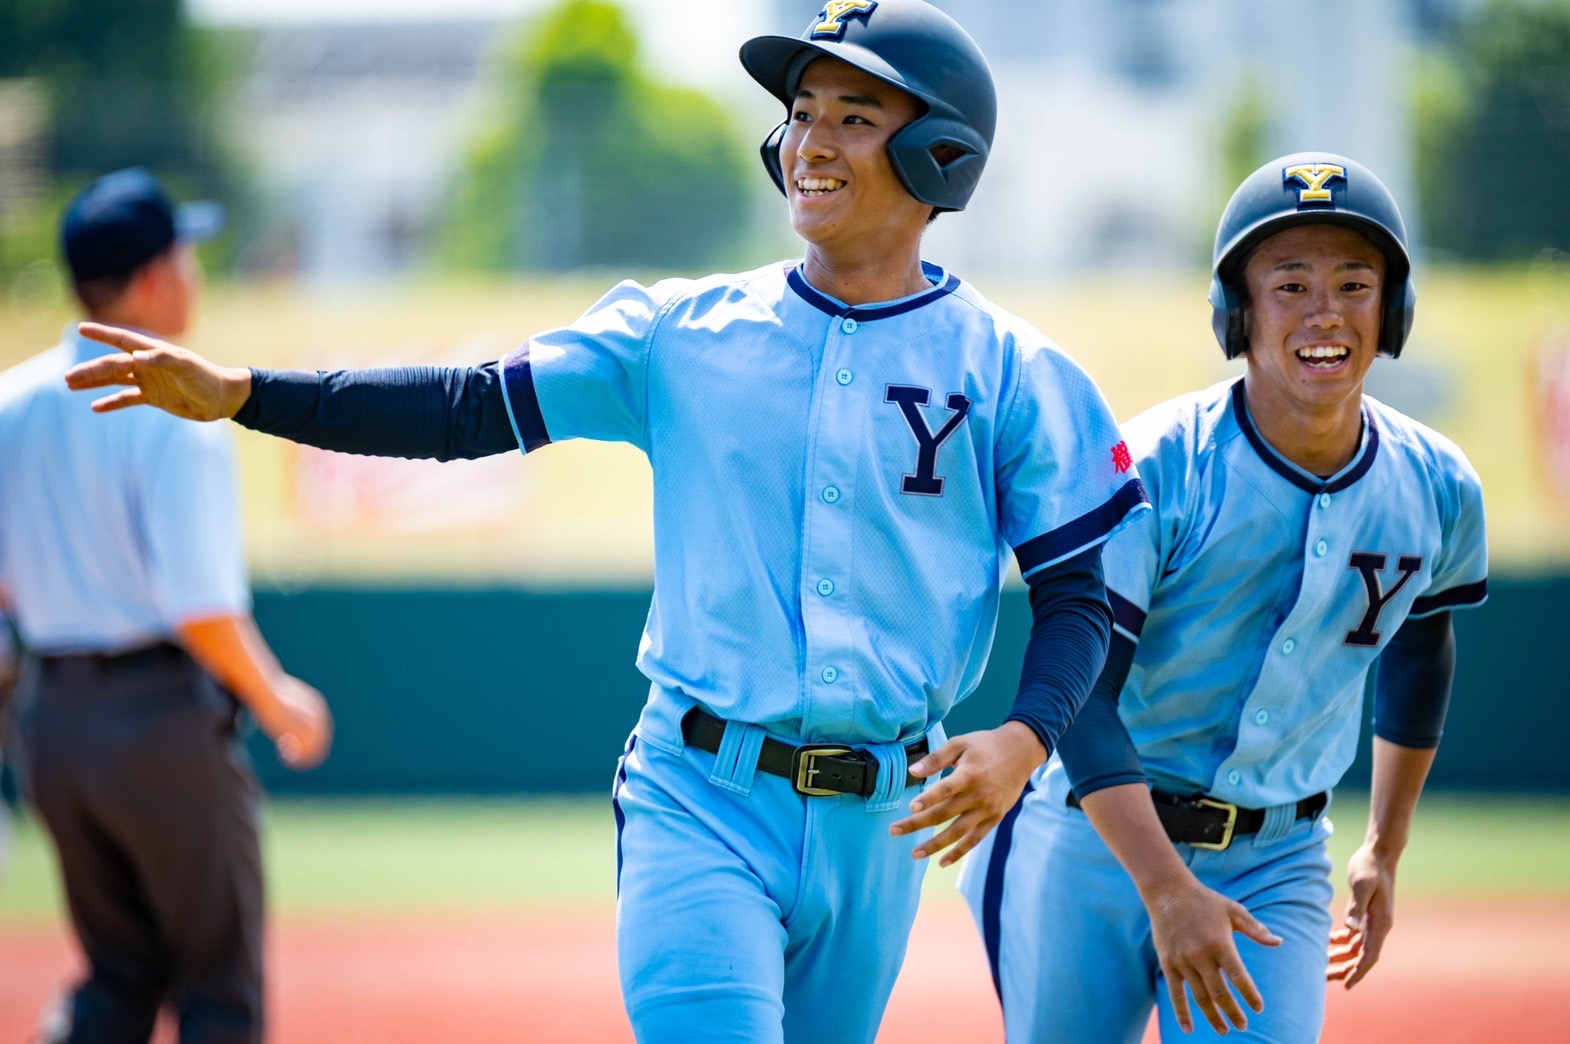 横浜高校(神奈川) 公式戦用 ユニフォーム 高校野球 甲子園 - ウェア